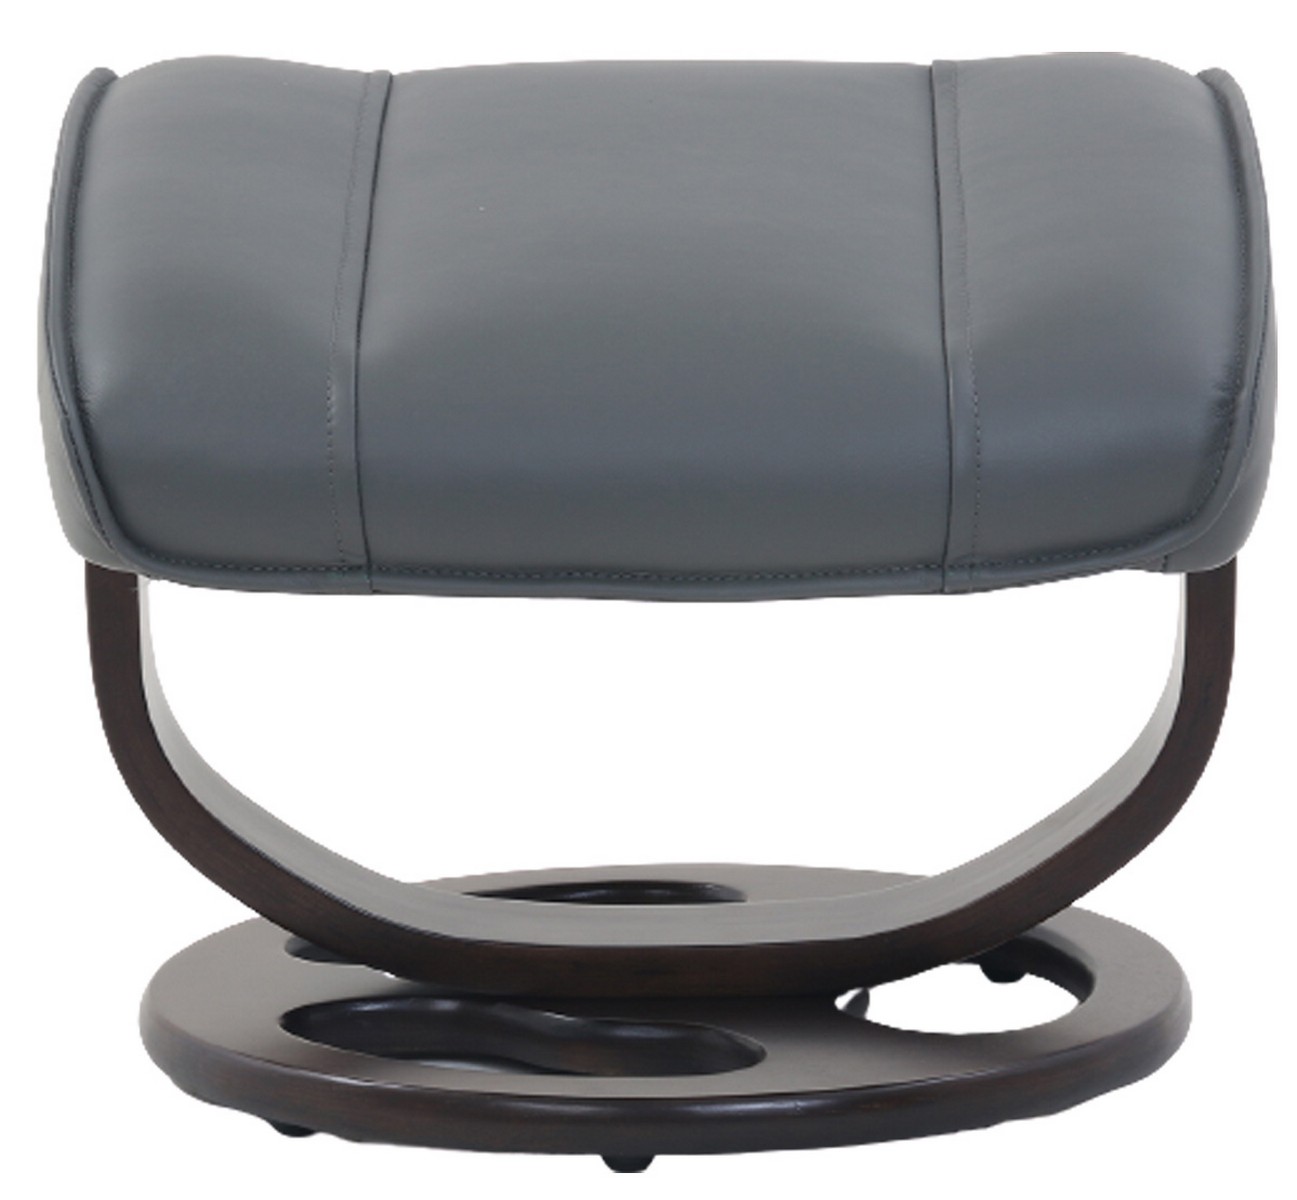 Barcalounger Austin Pedestal Recliner Chair/Ottoman - Marlene Gray/Leather Match